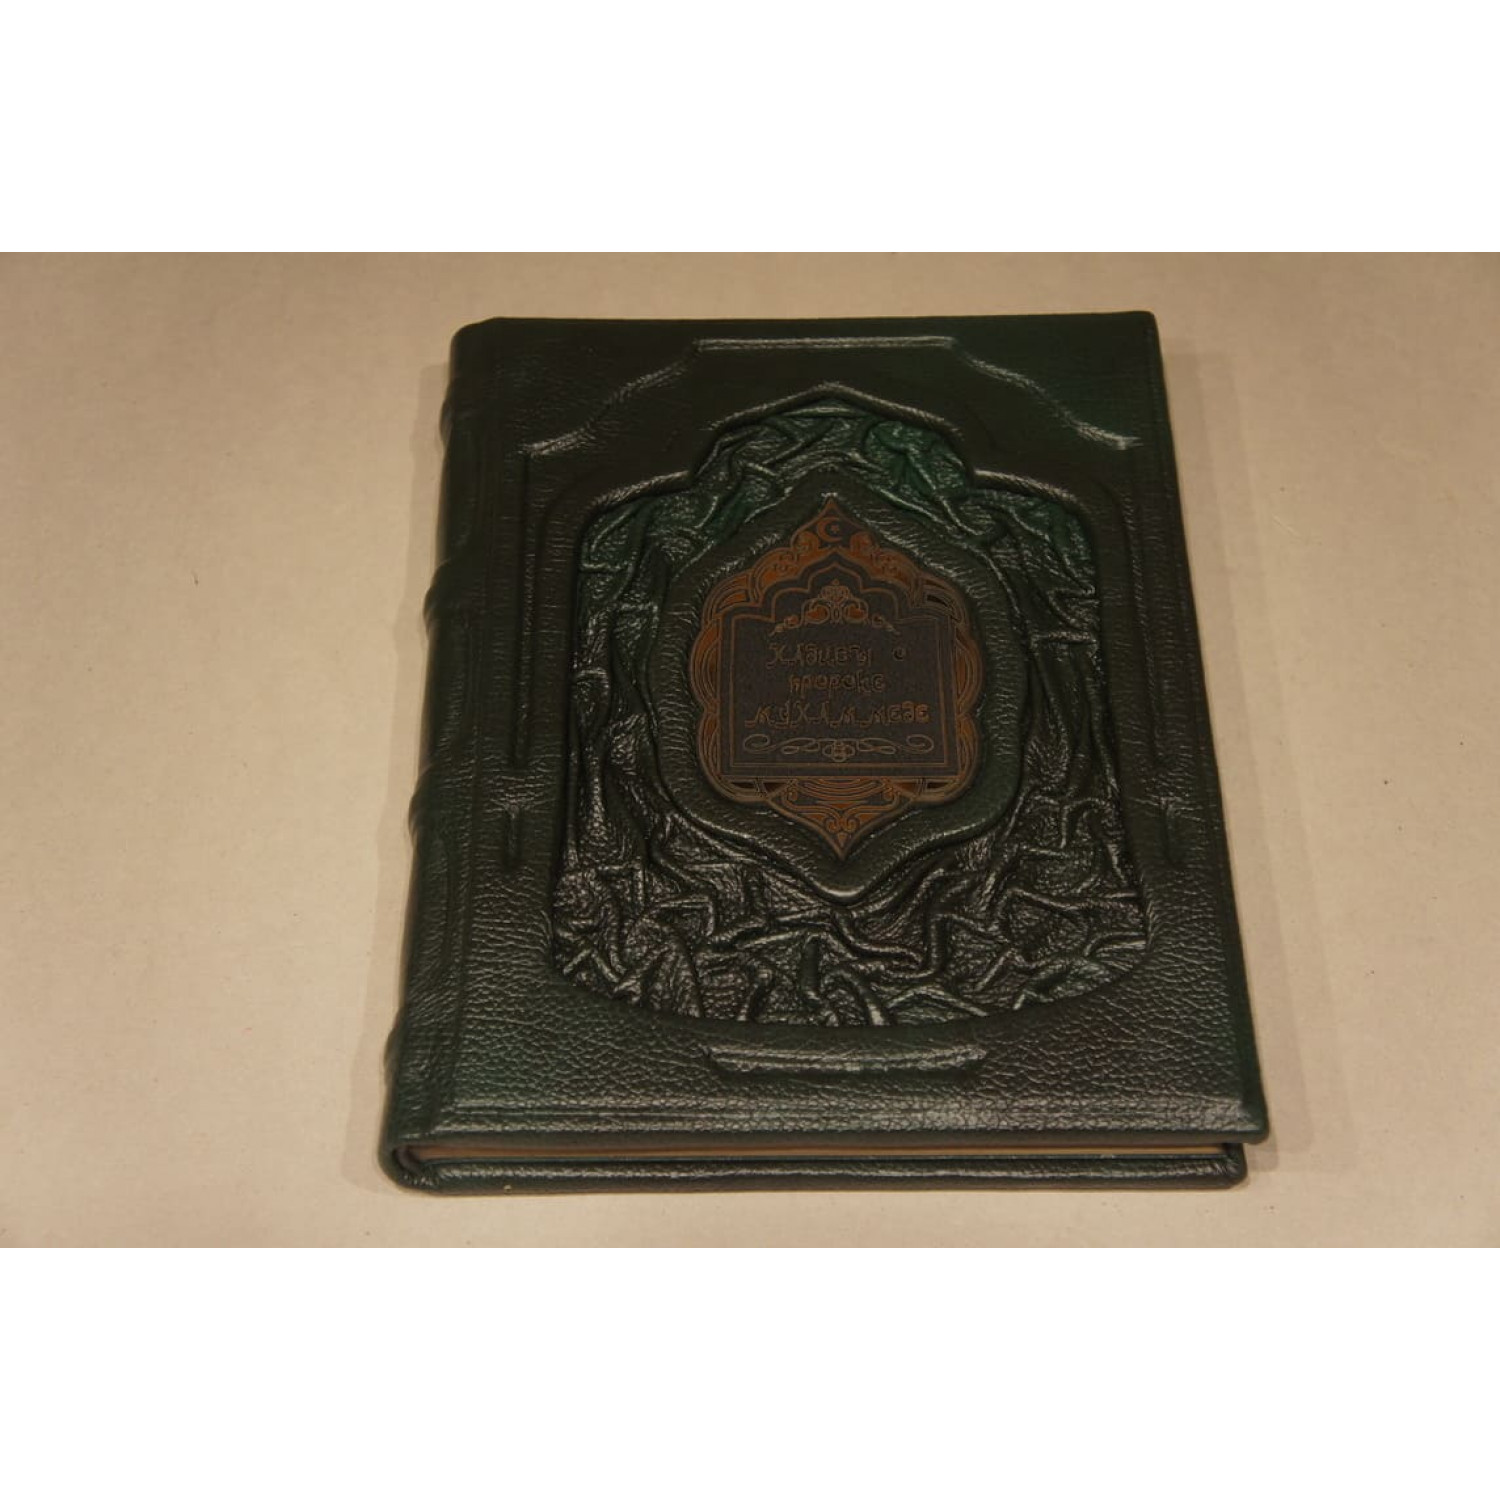 Подарочное издание "Хадисы о пророке Мухаммеде" в кожаном переплете ручной работы